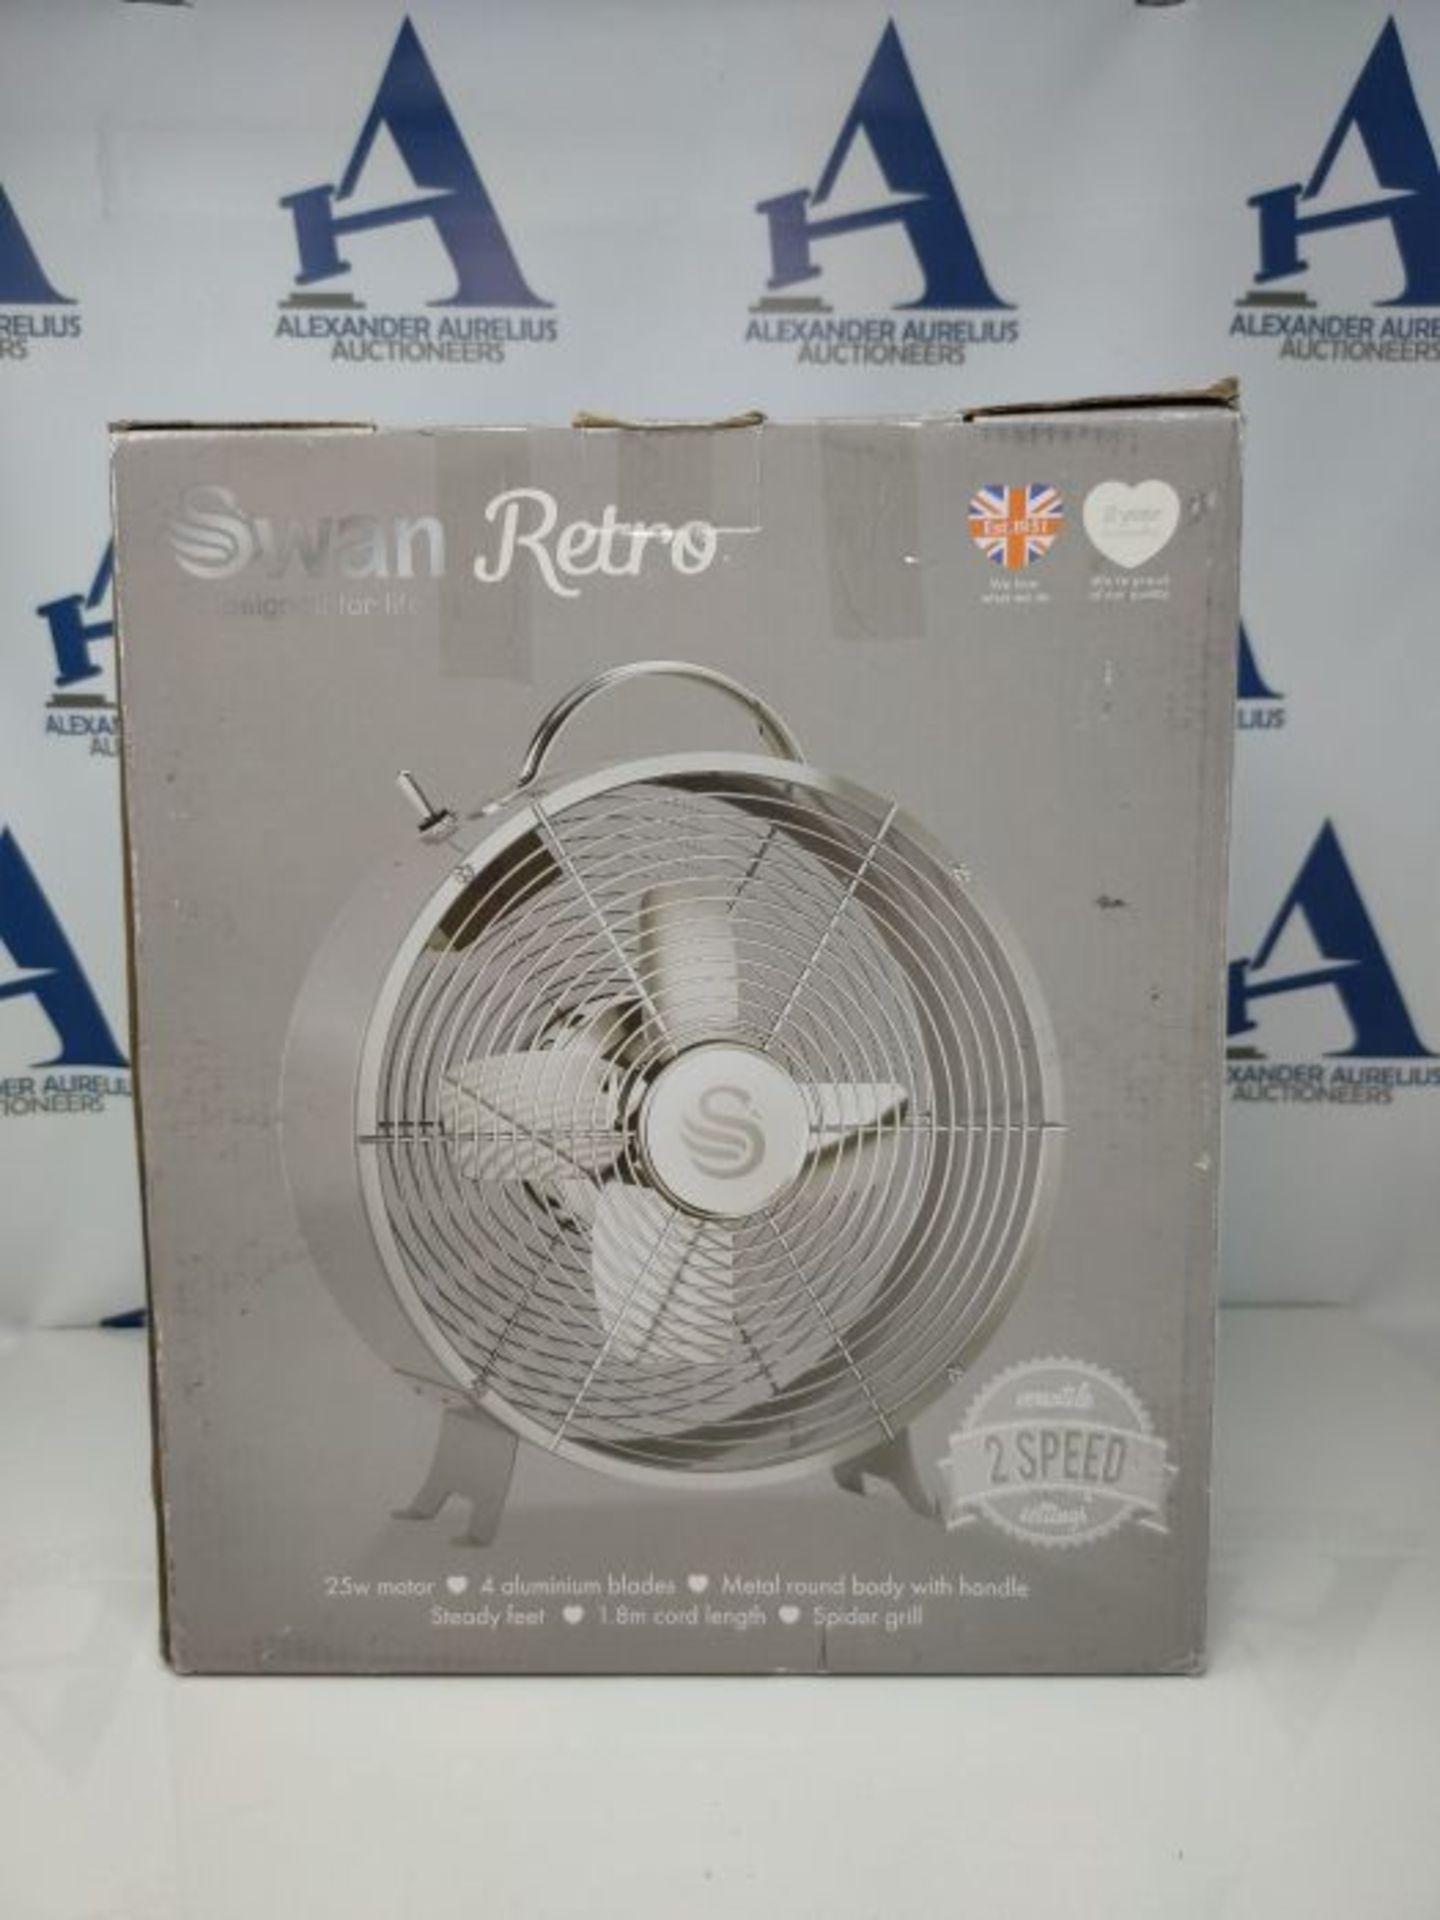 Swan SFA12630GRN, Retro 8 Inch Floor / Desk Clock Fan, Low Noise, Aluminium Blades, 20 - Image 2 of 3